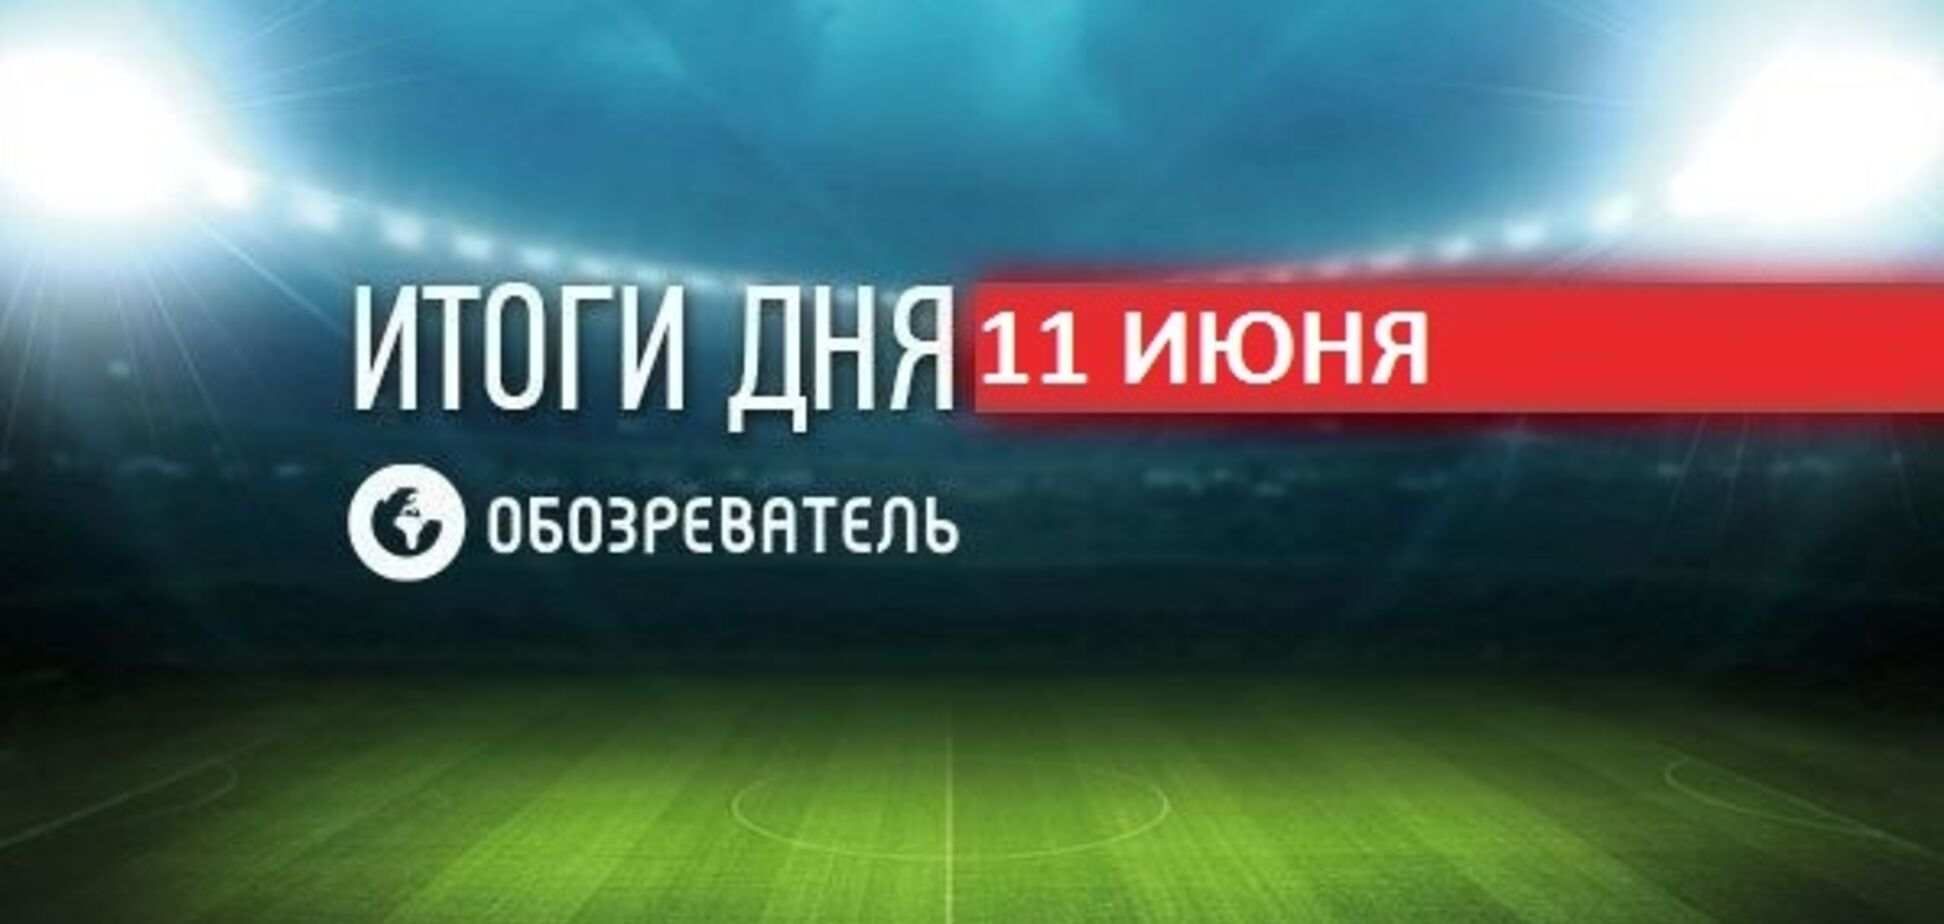 Украина драматично вышла в финал ЧМ по футболу U-20: спортивные итоги 11 июня